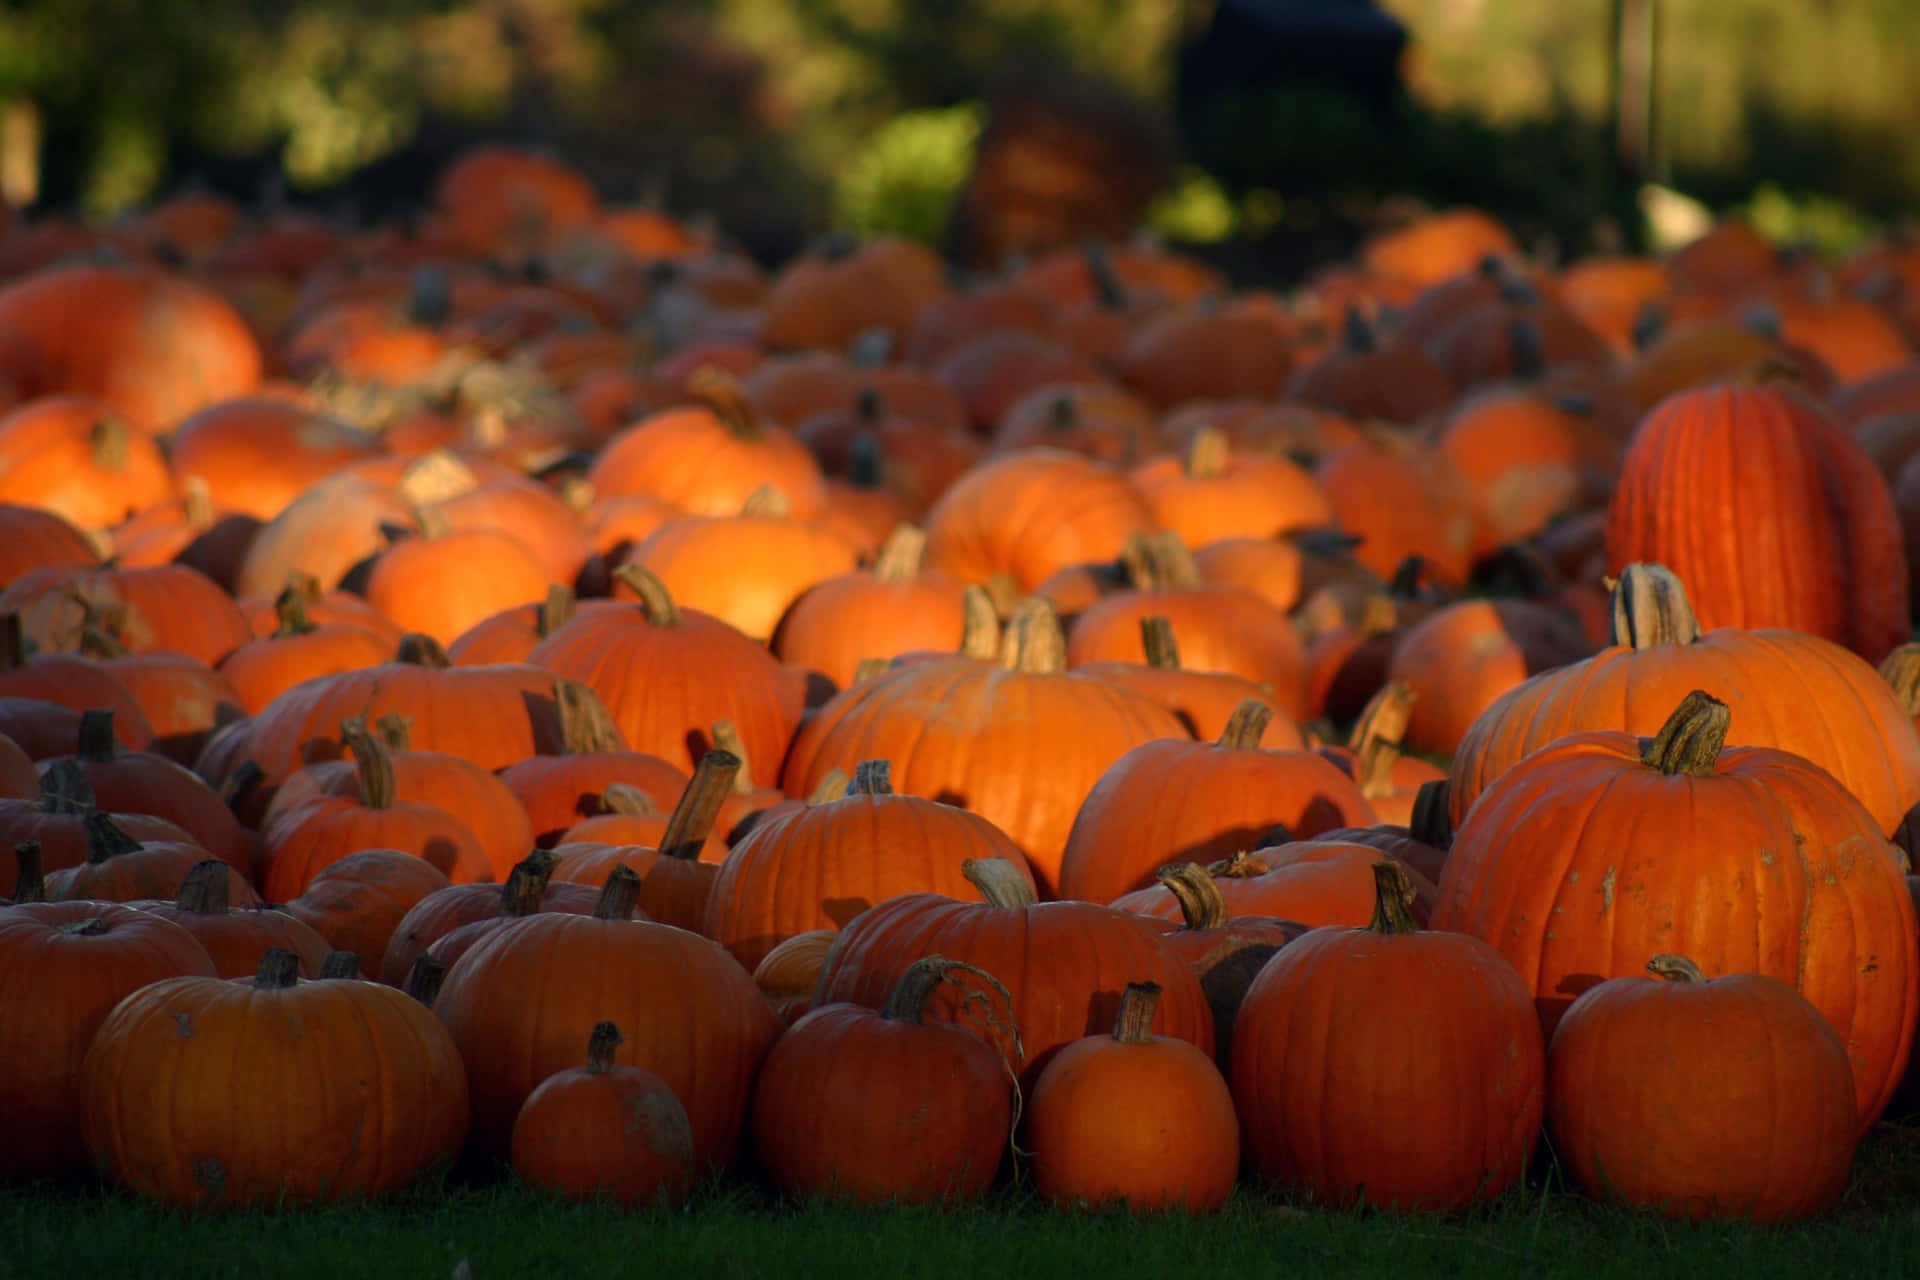 A Beautiful Fall Pumpkin Display